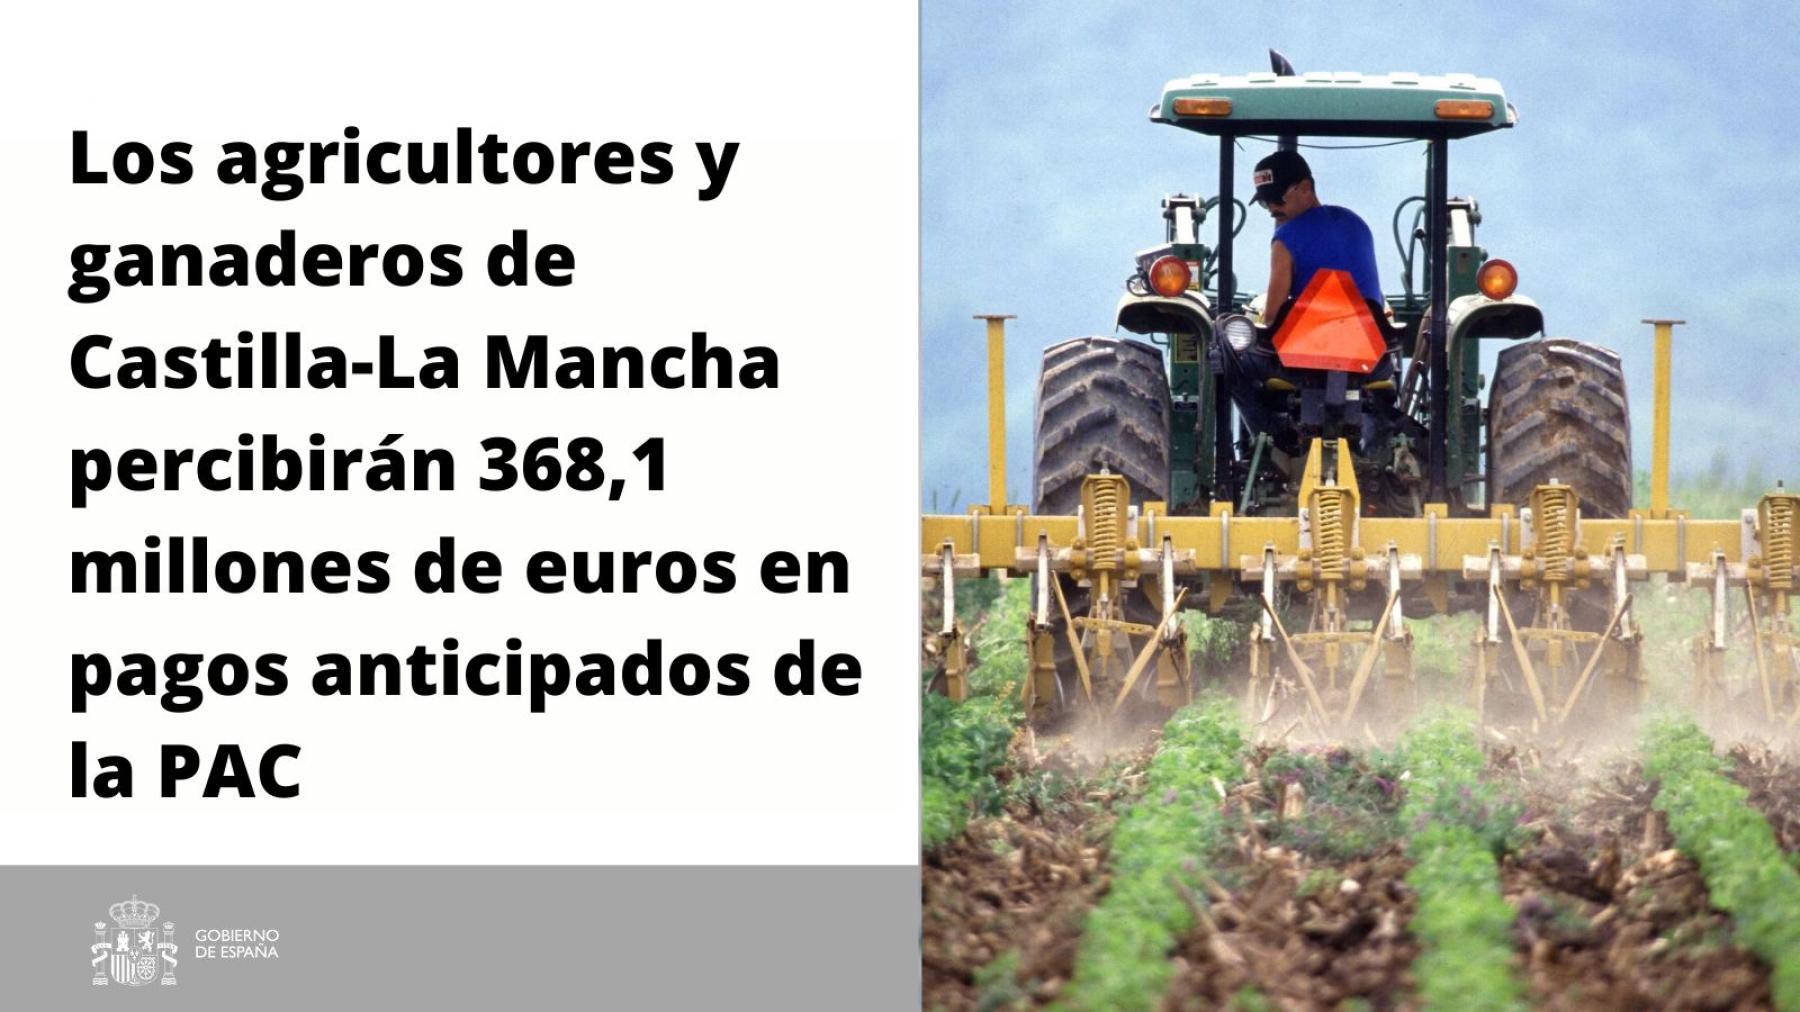 Los agricultores y ganaderos de Castilla-La Mancha percibirán 368,1 millones de euros en pagos anticipados de la PAC